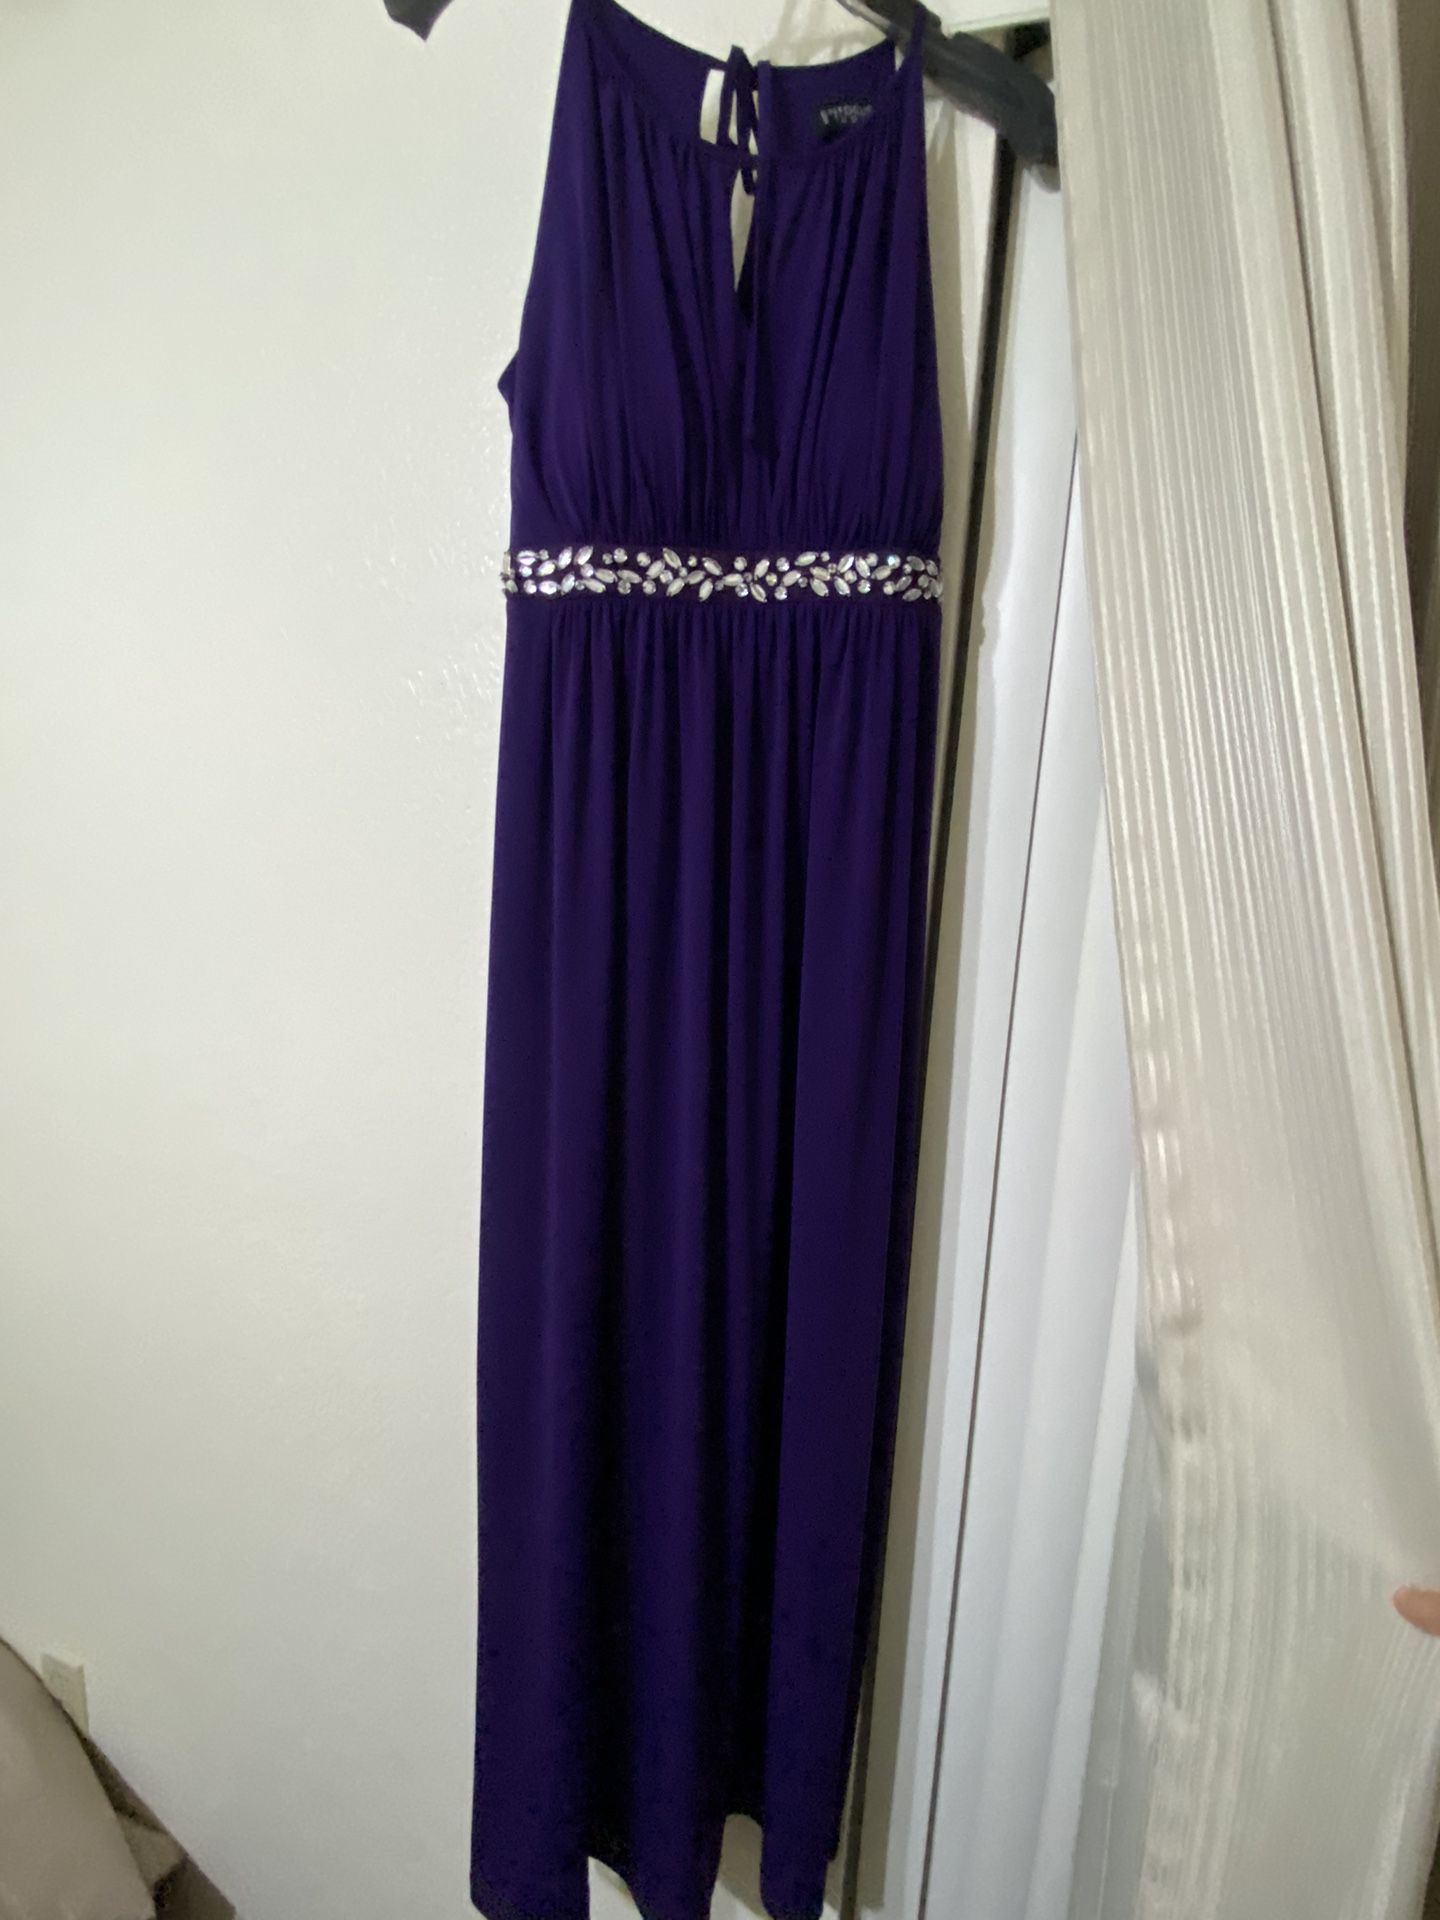 Beautiful Purple Dress!!